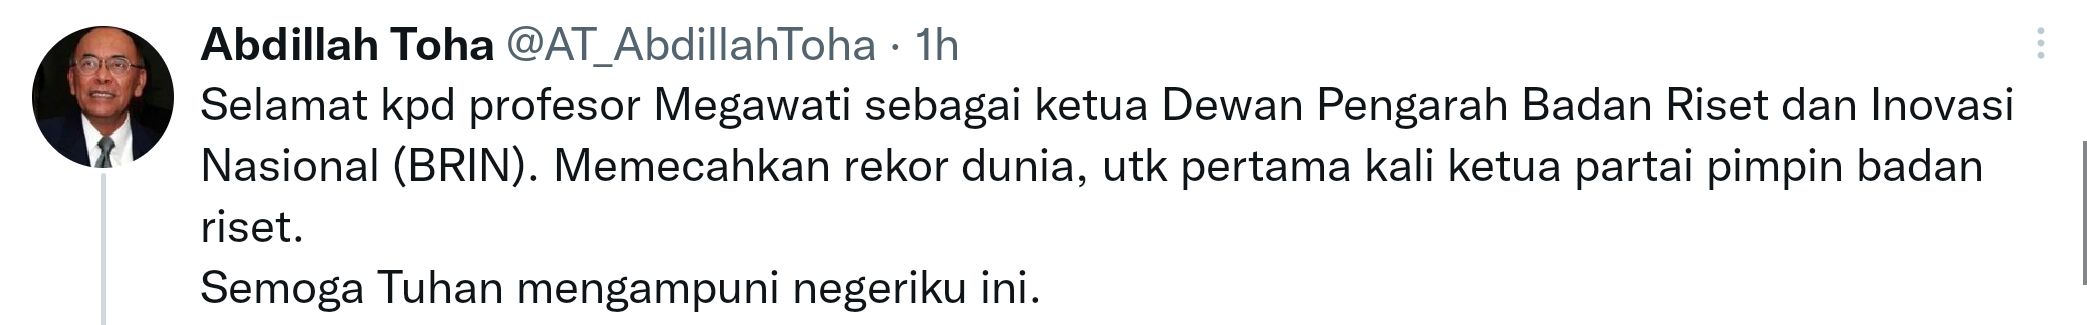 Cuitan Abdillah Toha soal pelantikan Megawati sebagai Ketua Dewan Pengarah BRIN. 